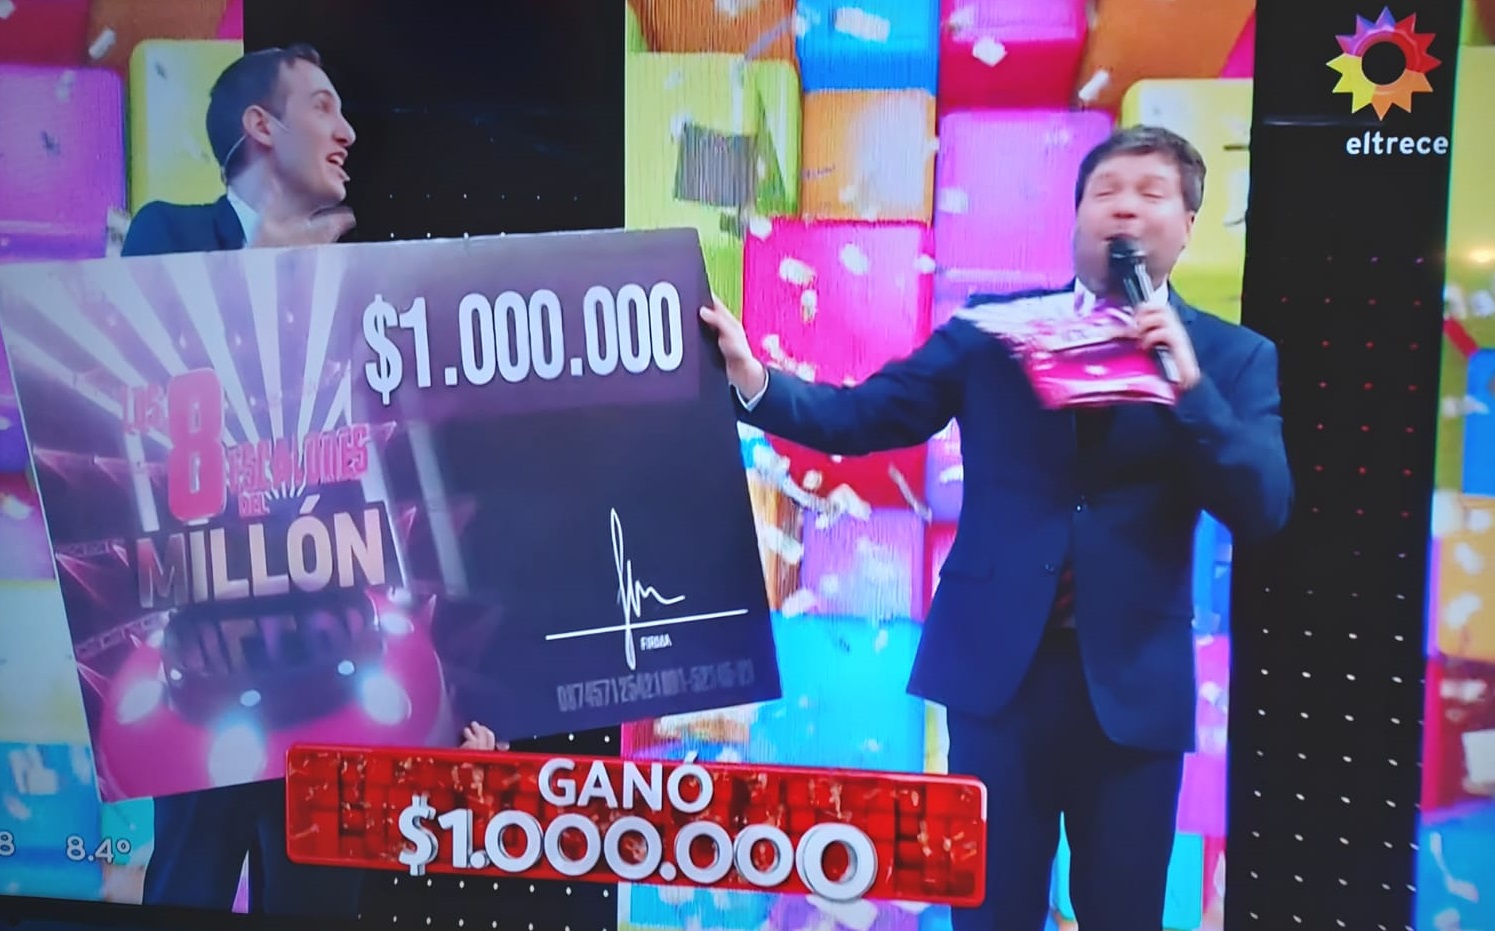 ¡Un joven pampeano ganó $ 1 millón de pesos en “Los 8 escalones”, el popular programa de Guido Kaczka!